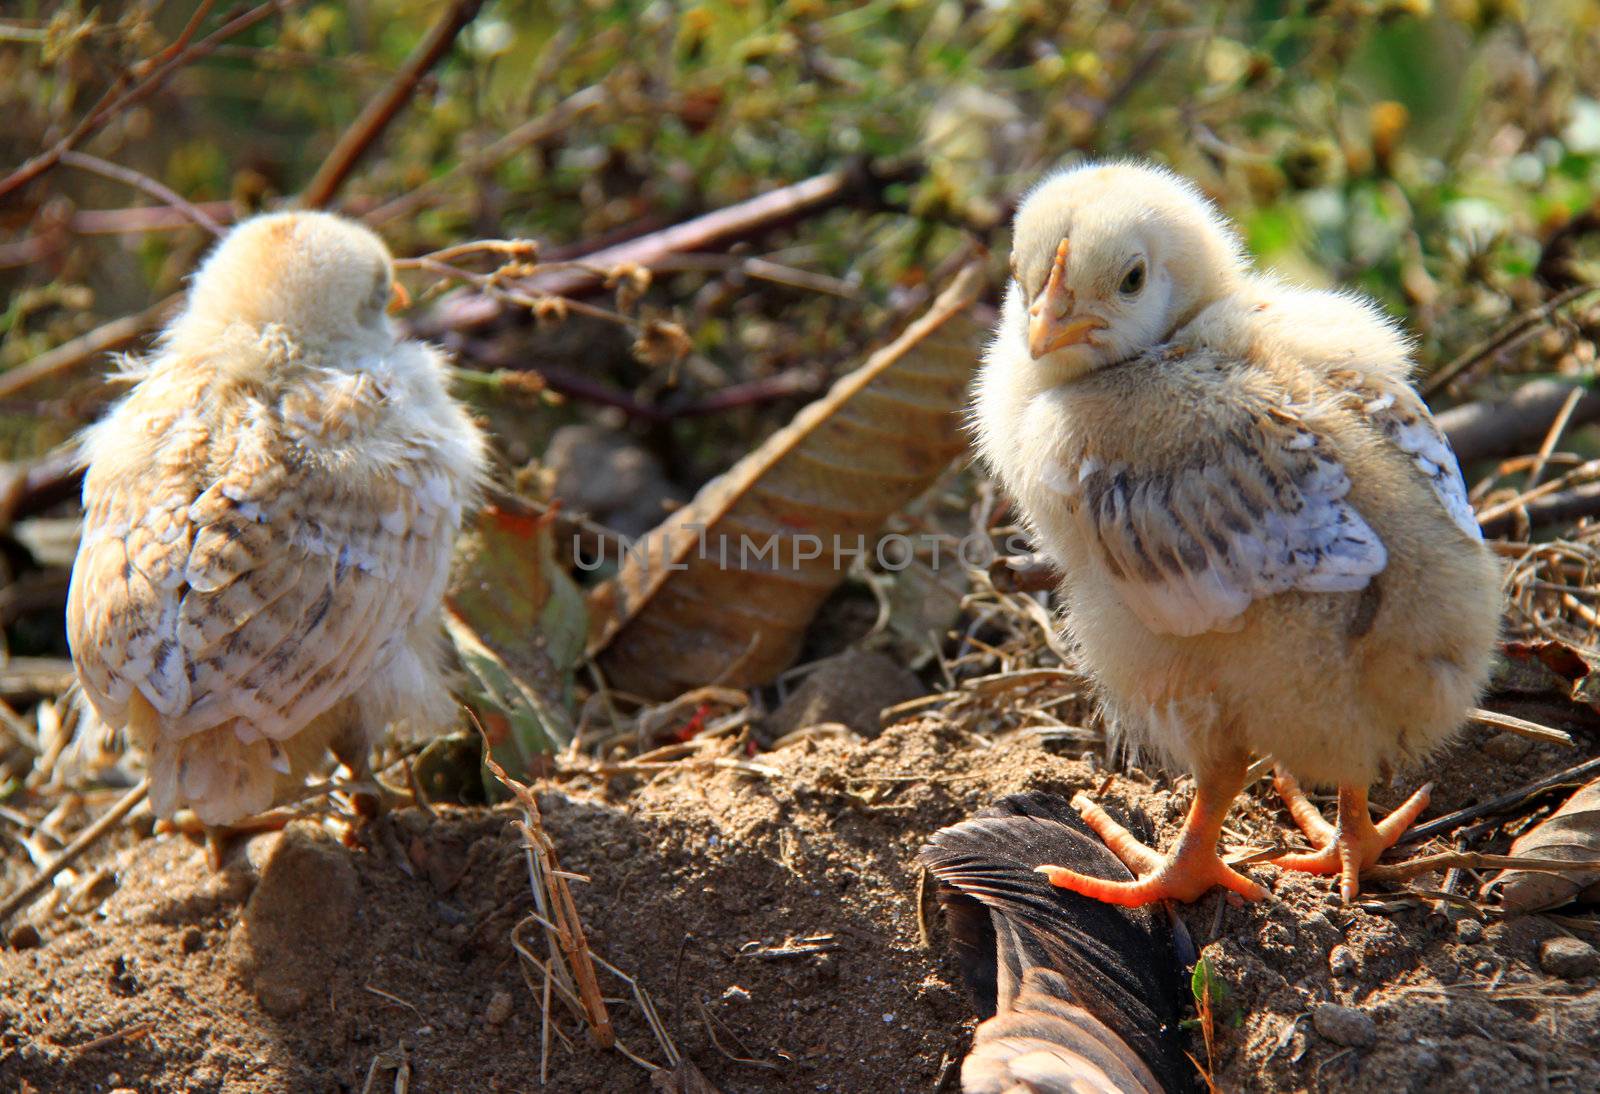 Newborn chickens in the farm by nuchylee